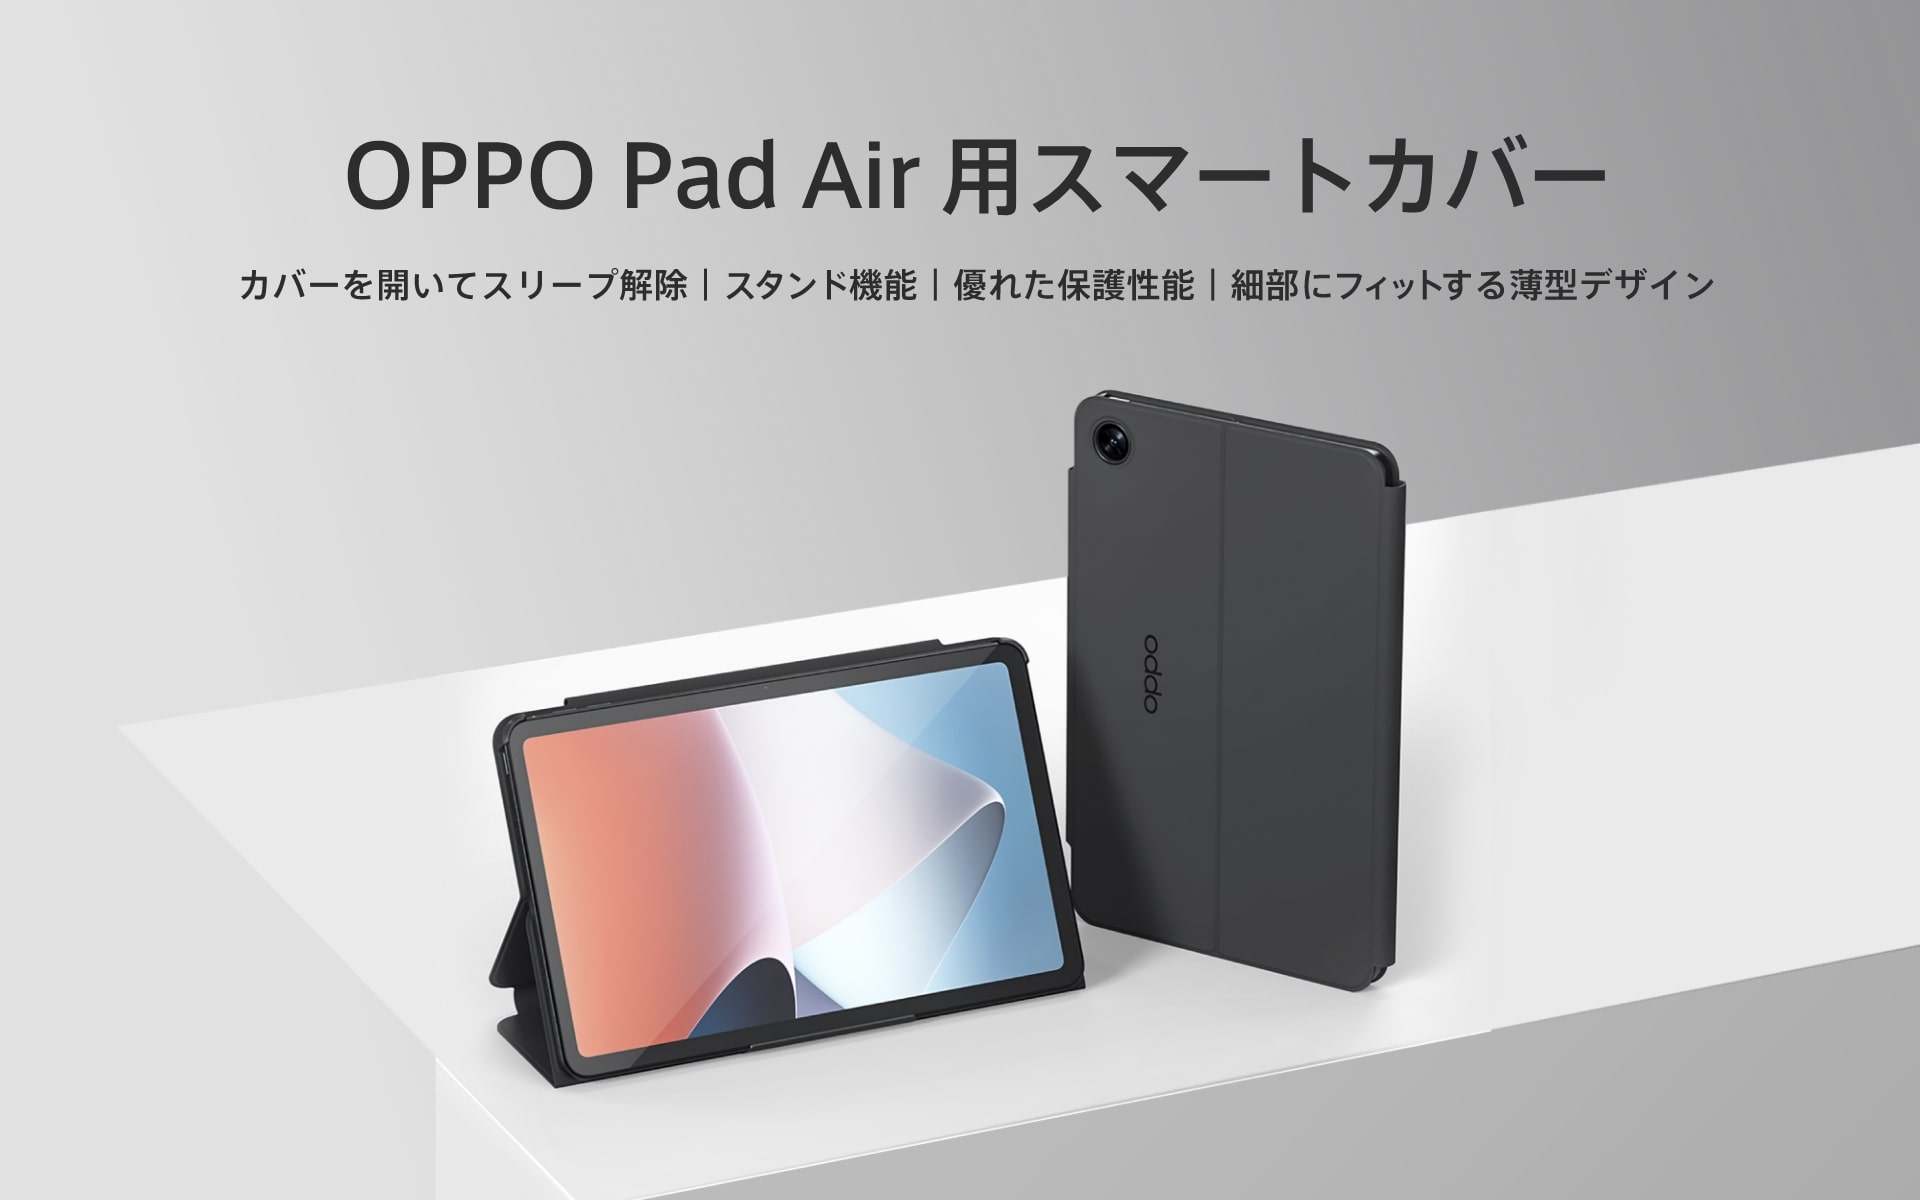 oppo pad air ナイトグレータブレット＋純正パッドair用カバー PC